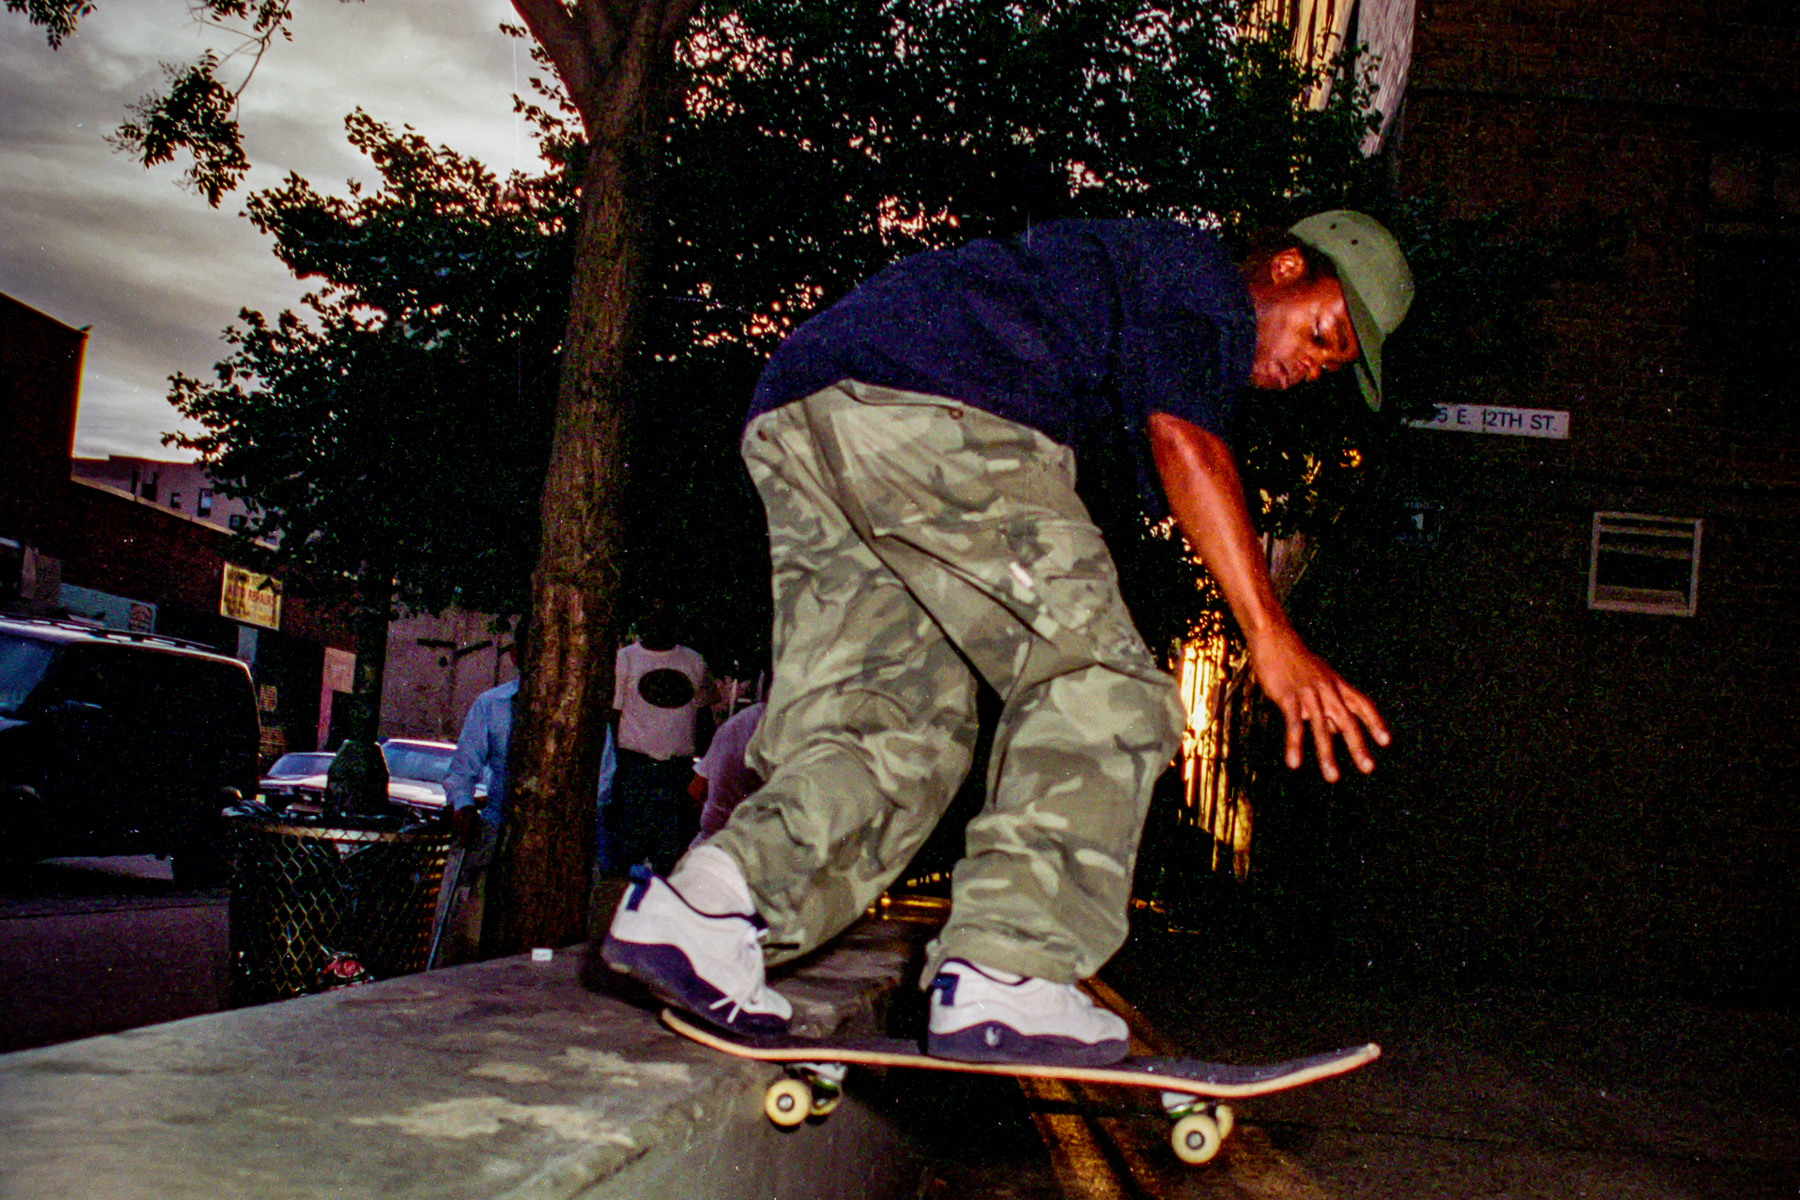 NYC Skateboard, las culturas del hip-hop chocan en el nuevo documental 'Todas las calles son silenciosas'